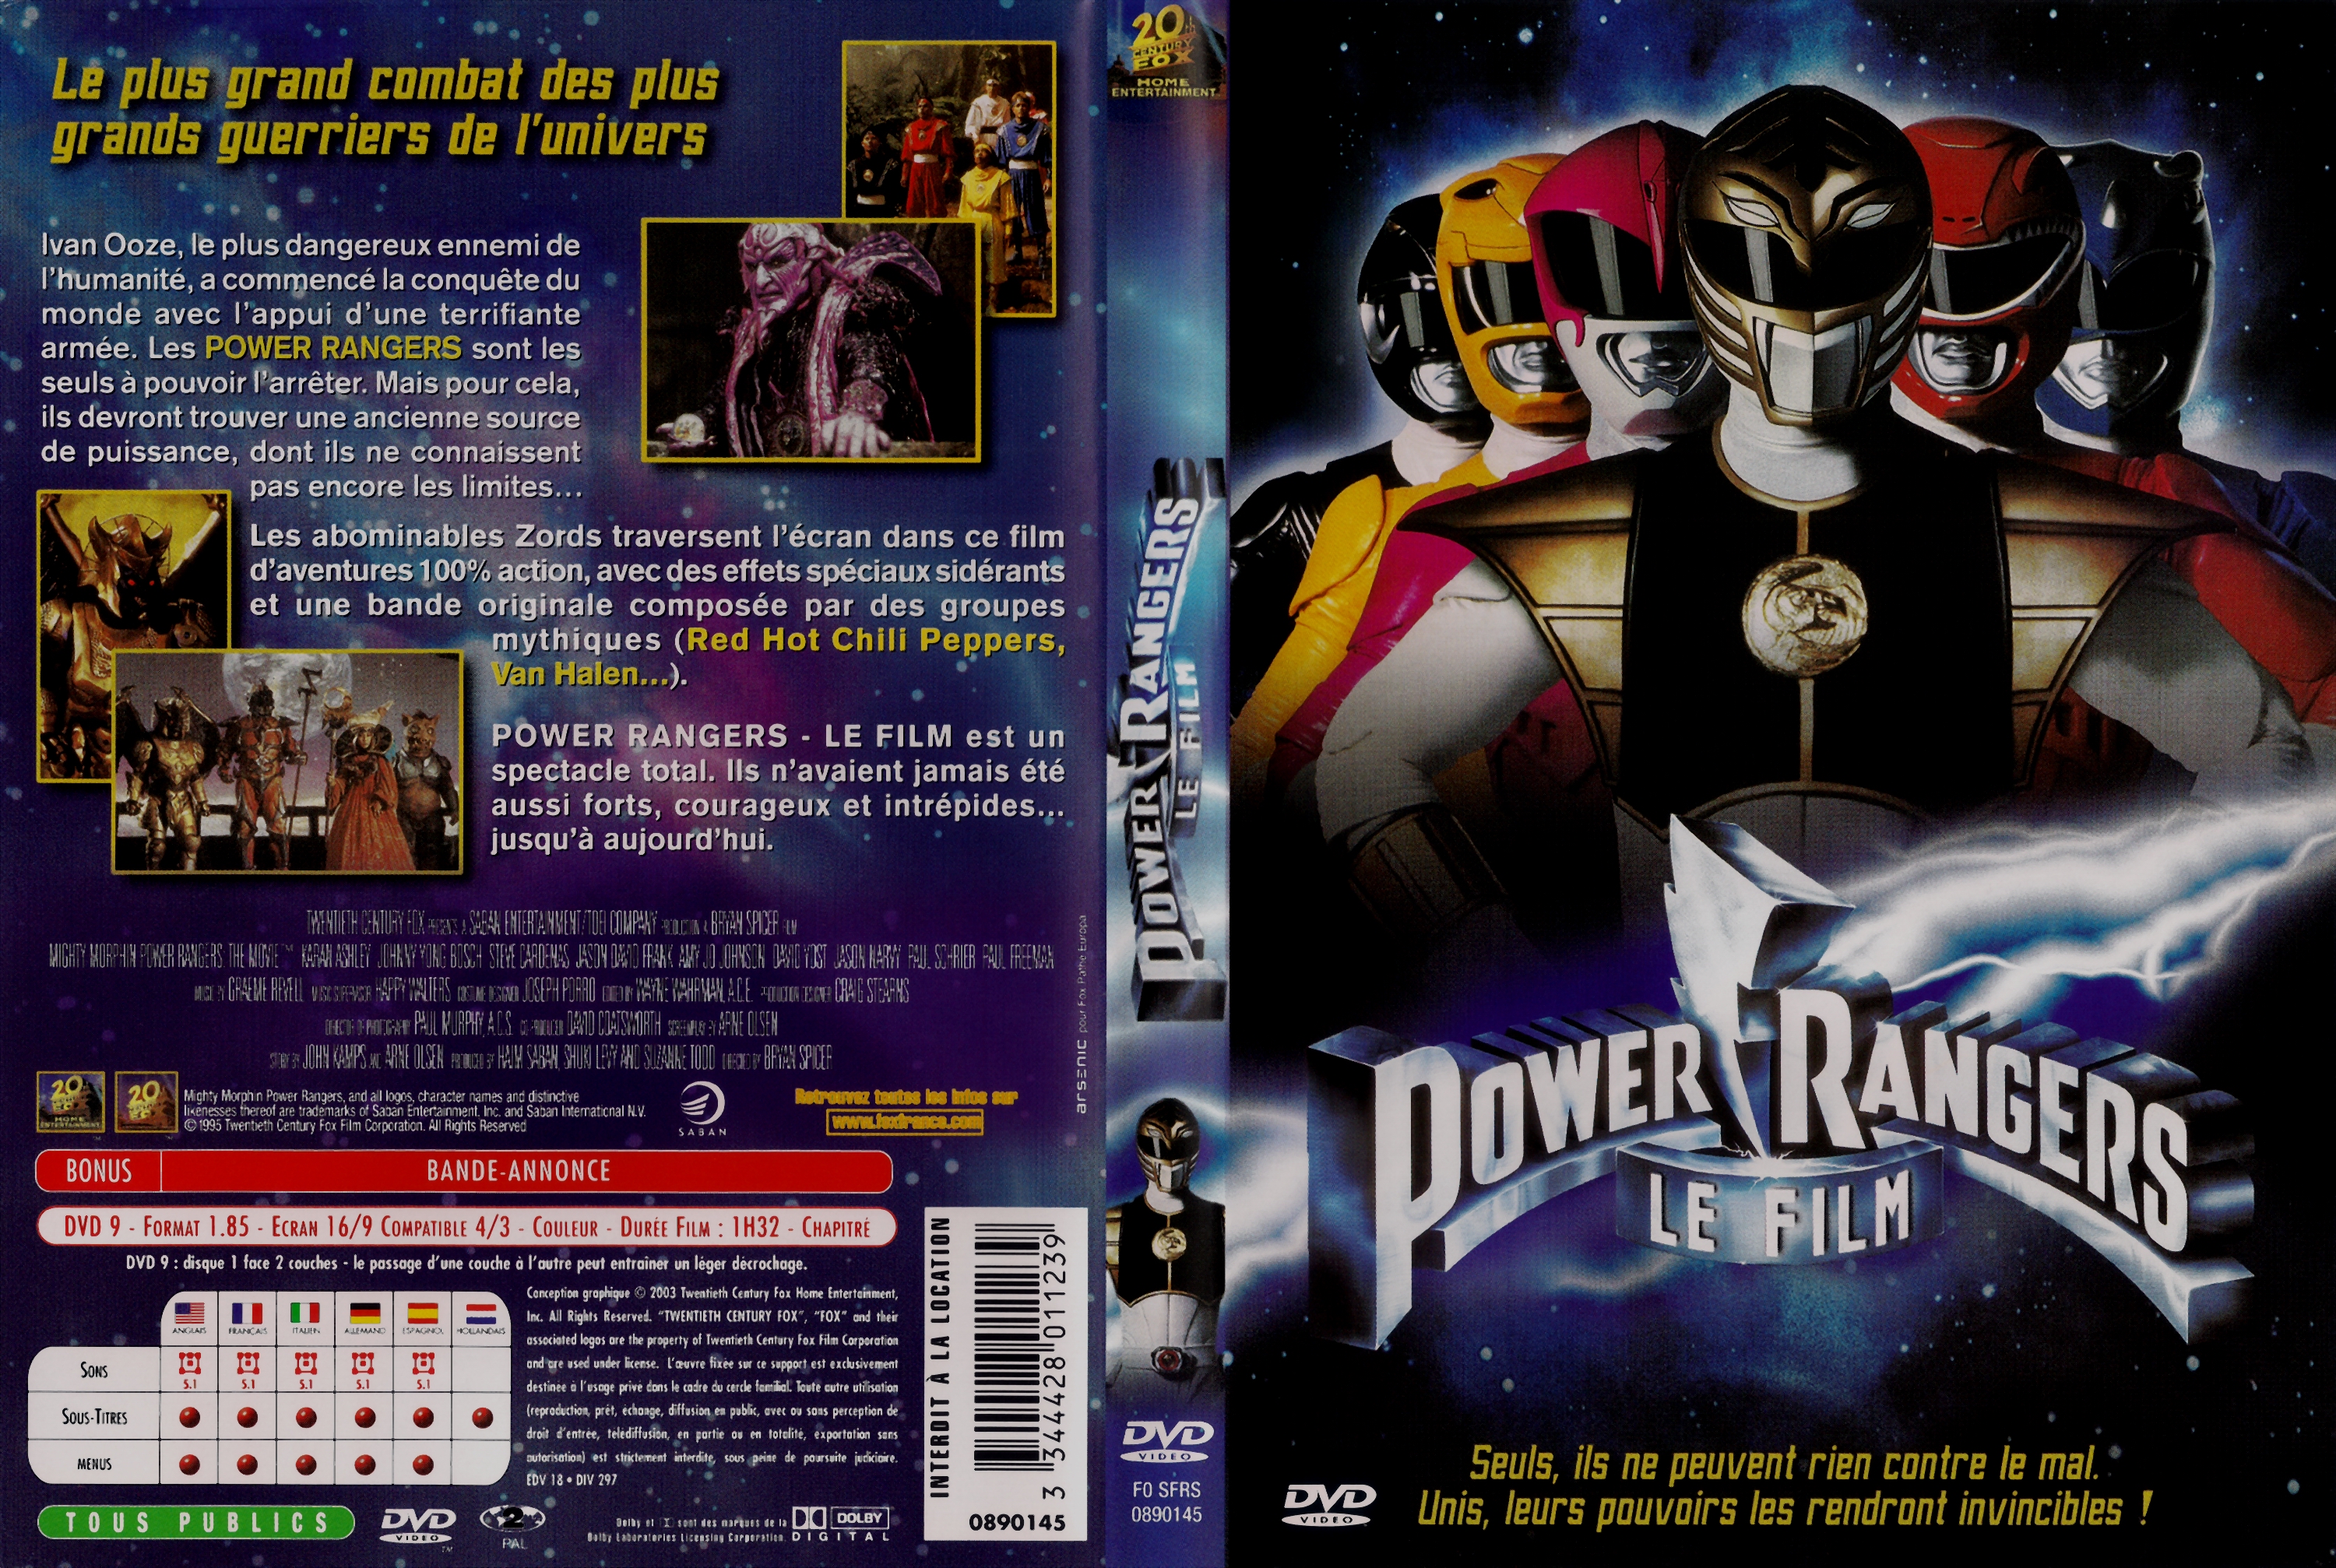 Jaquette DVD Power Rangers Le Film